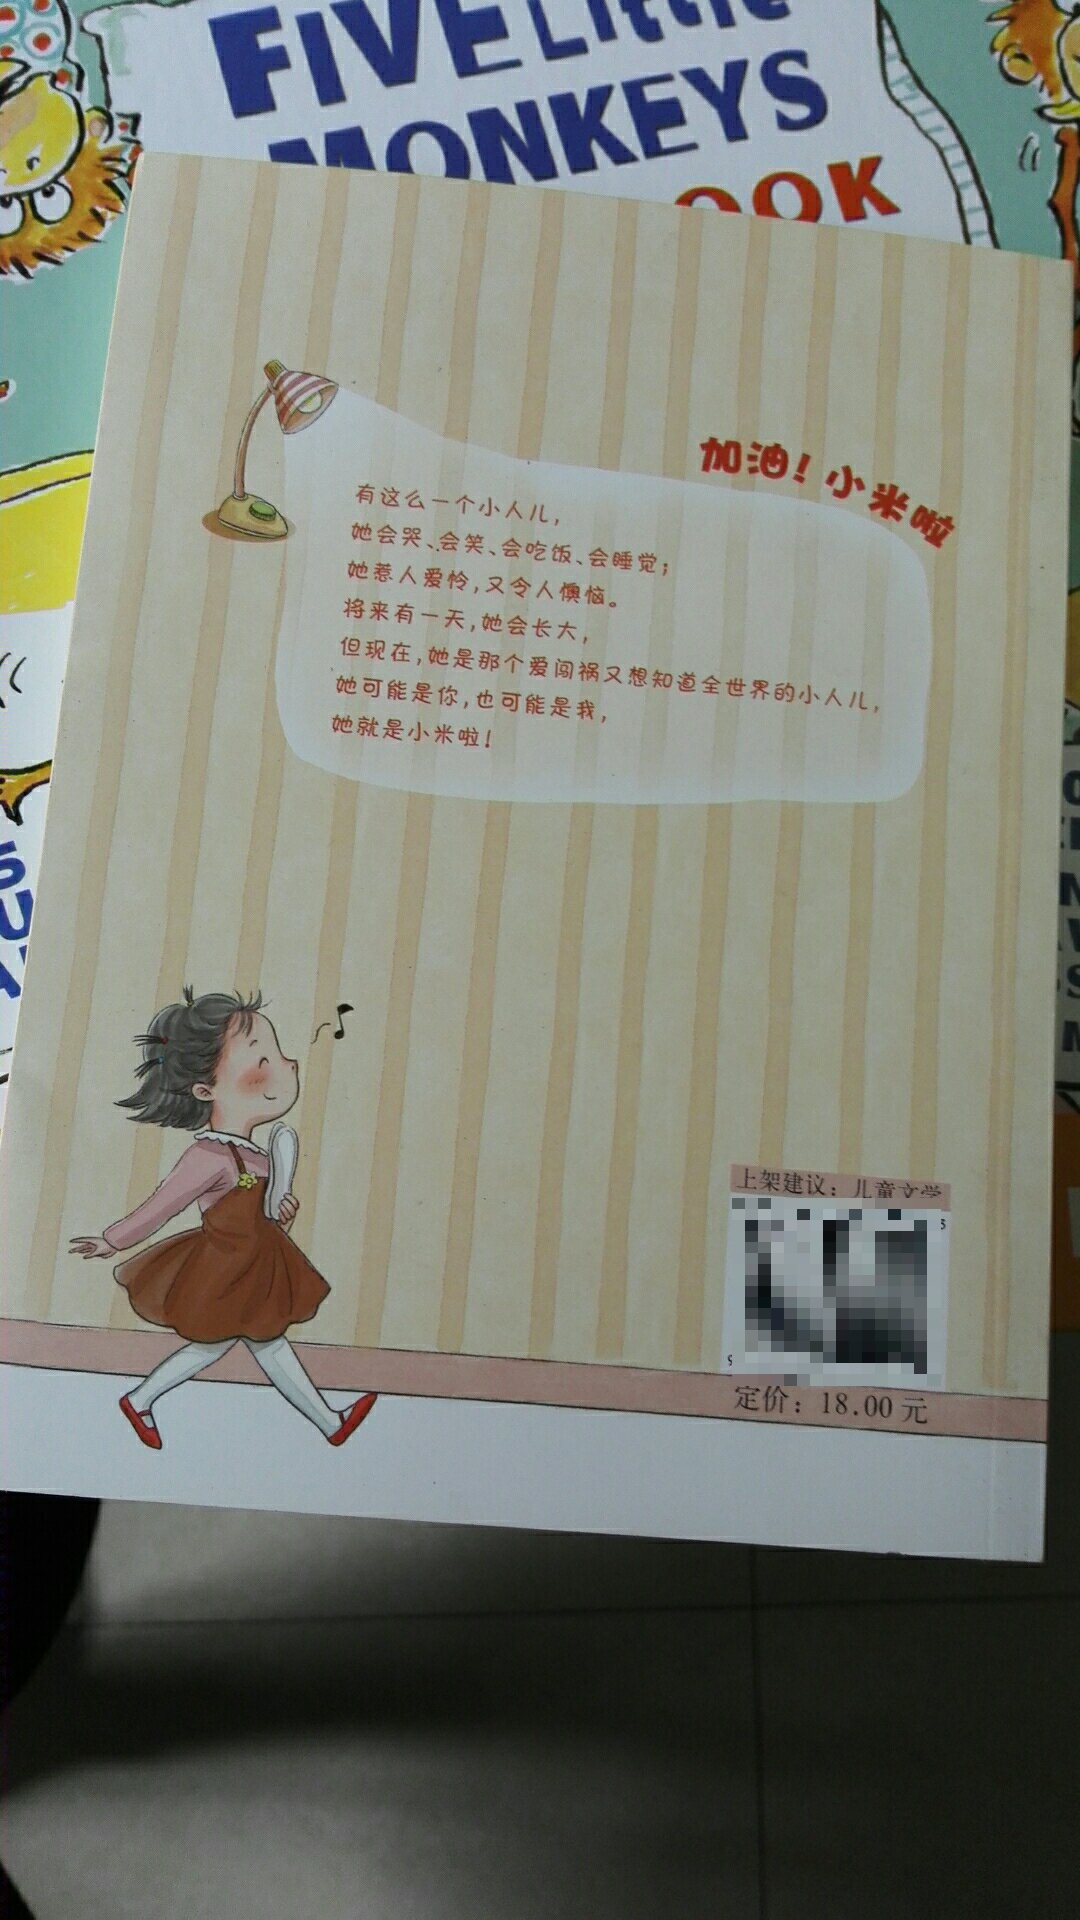 这是学校语文课上要求的一本书，希望对孩子的学习有帮助，纸质非常好，越来越值得信任！但有一些在自营上找不到，希望越来越全面?